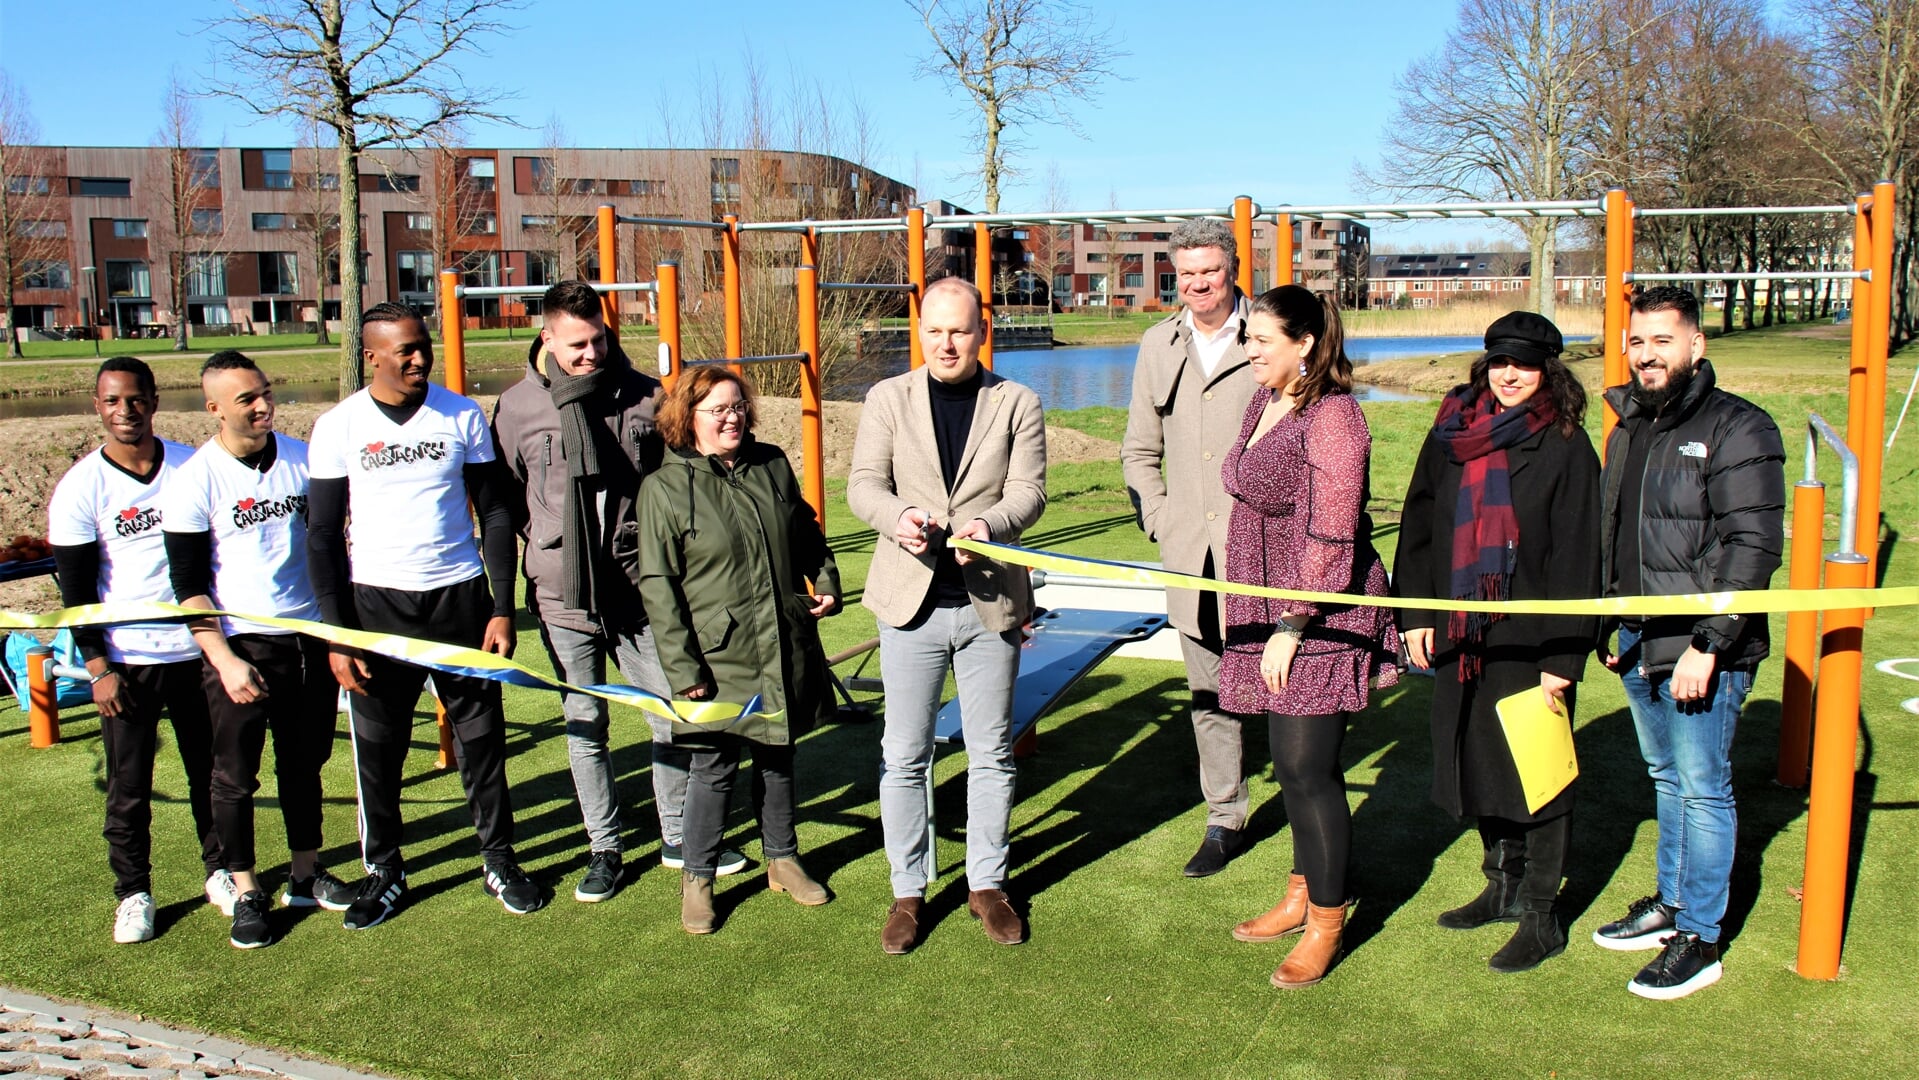 • De opening van het calisthenics-parkje, die onlangs plaatsvond, was één van de onderdelen van het Vitaliteitsakkoord in Papendrecht.